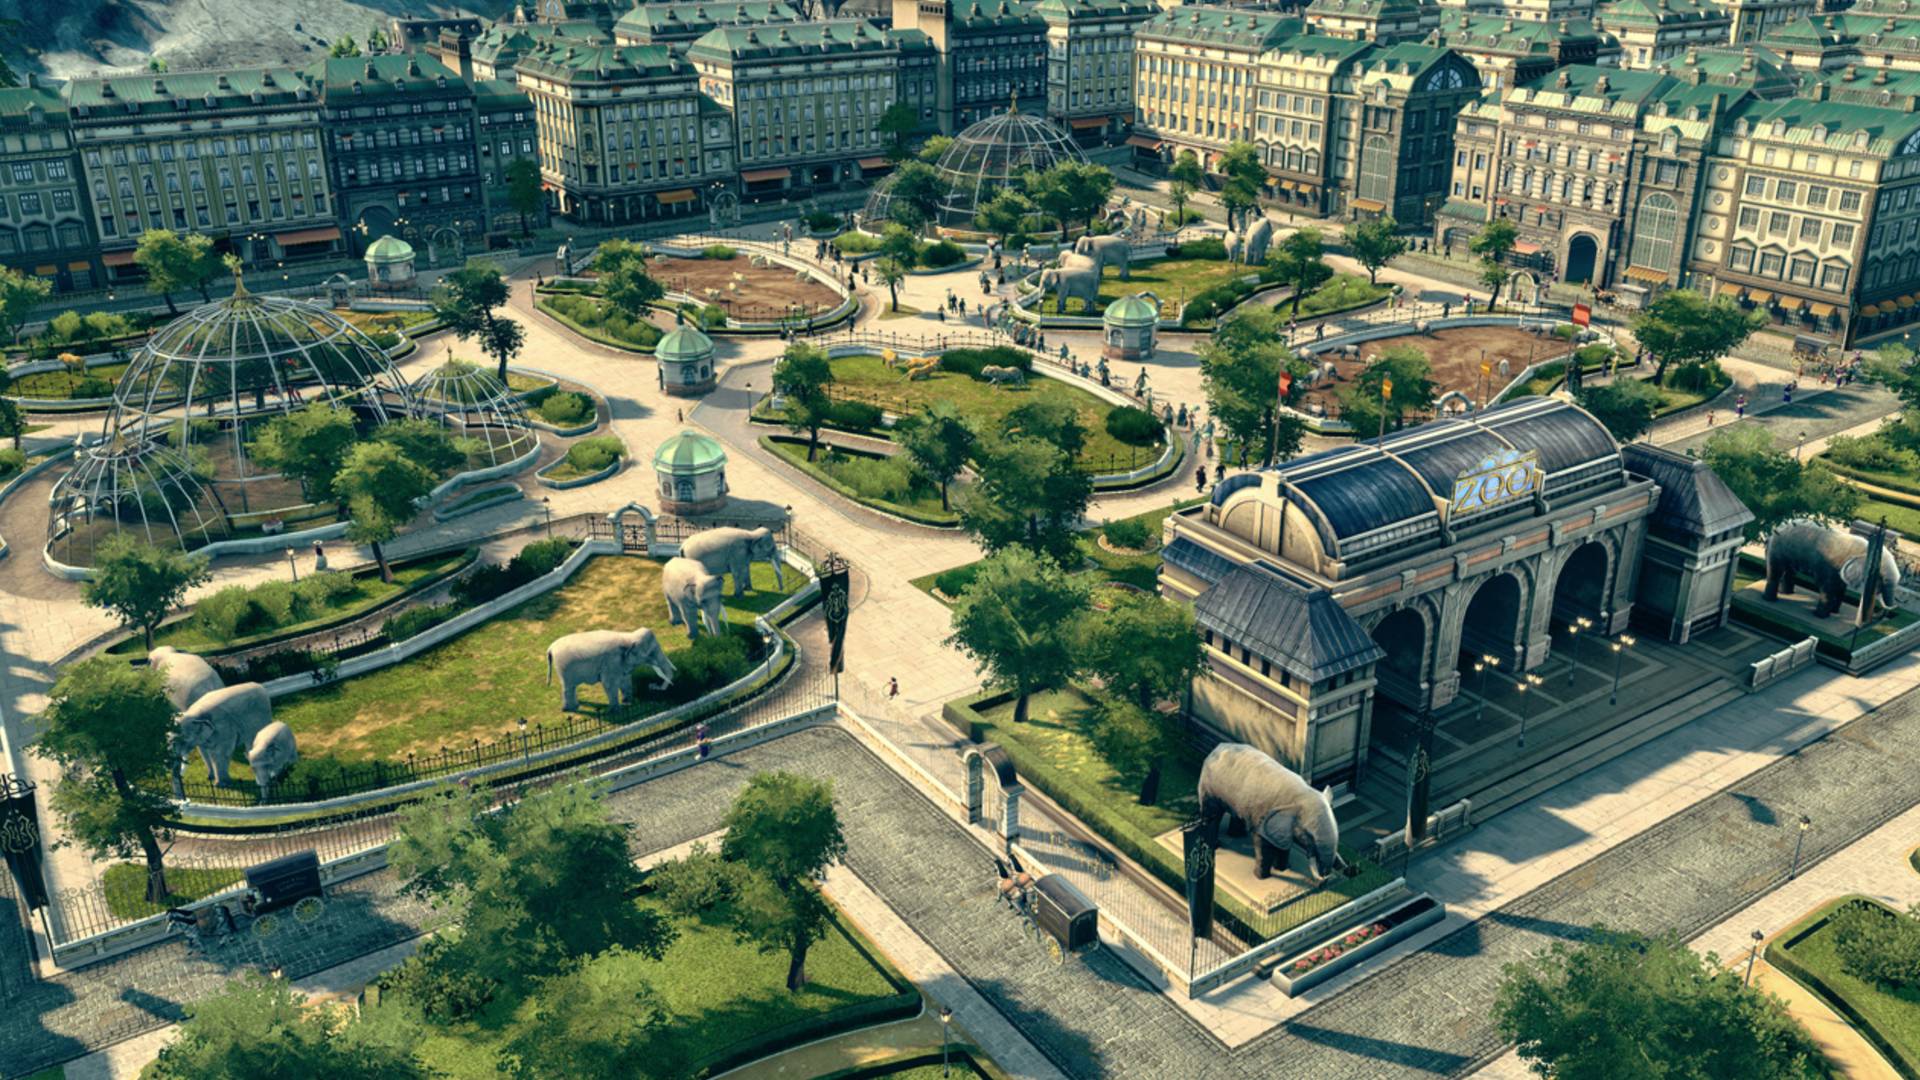 Melhores jogos de construção da cidade: Anno 1800. A imagem mostra um parque cheio de estátuas e esferas de vidro